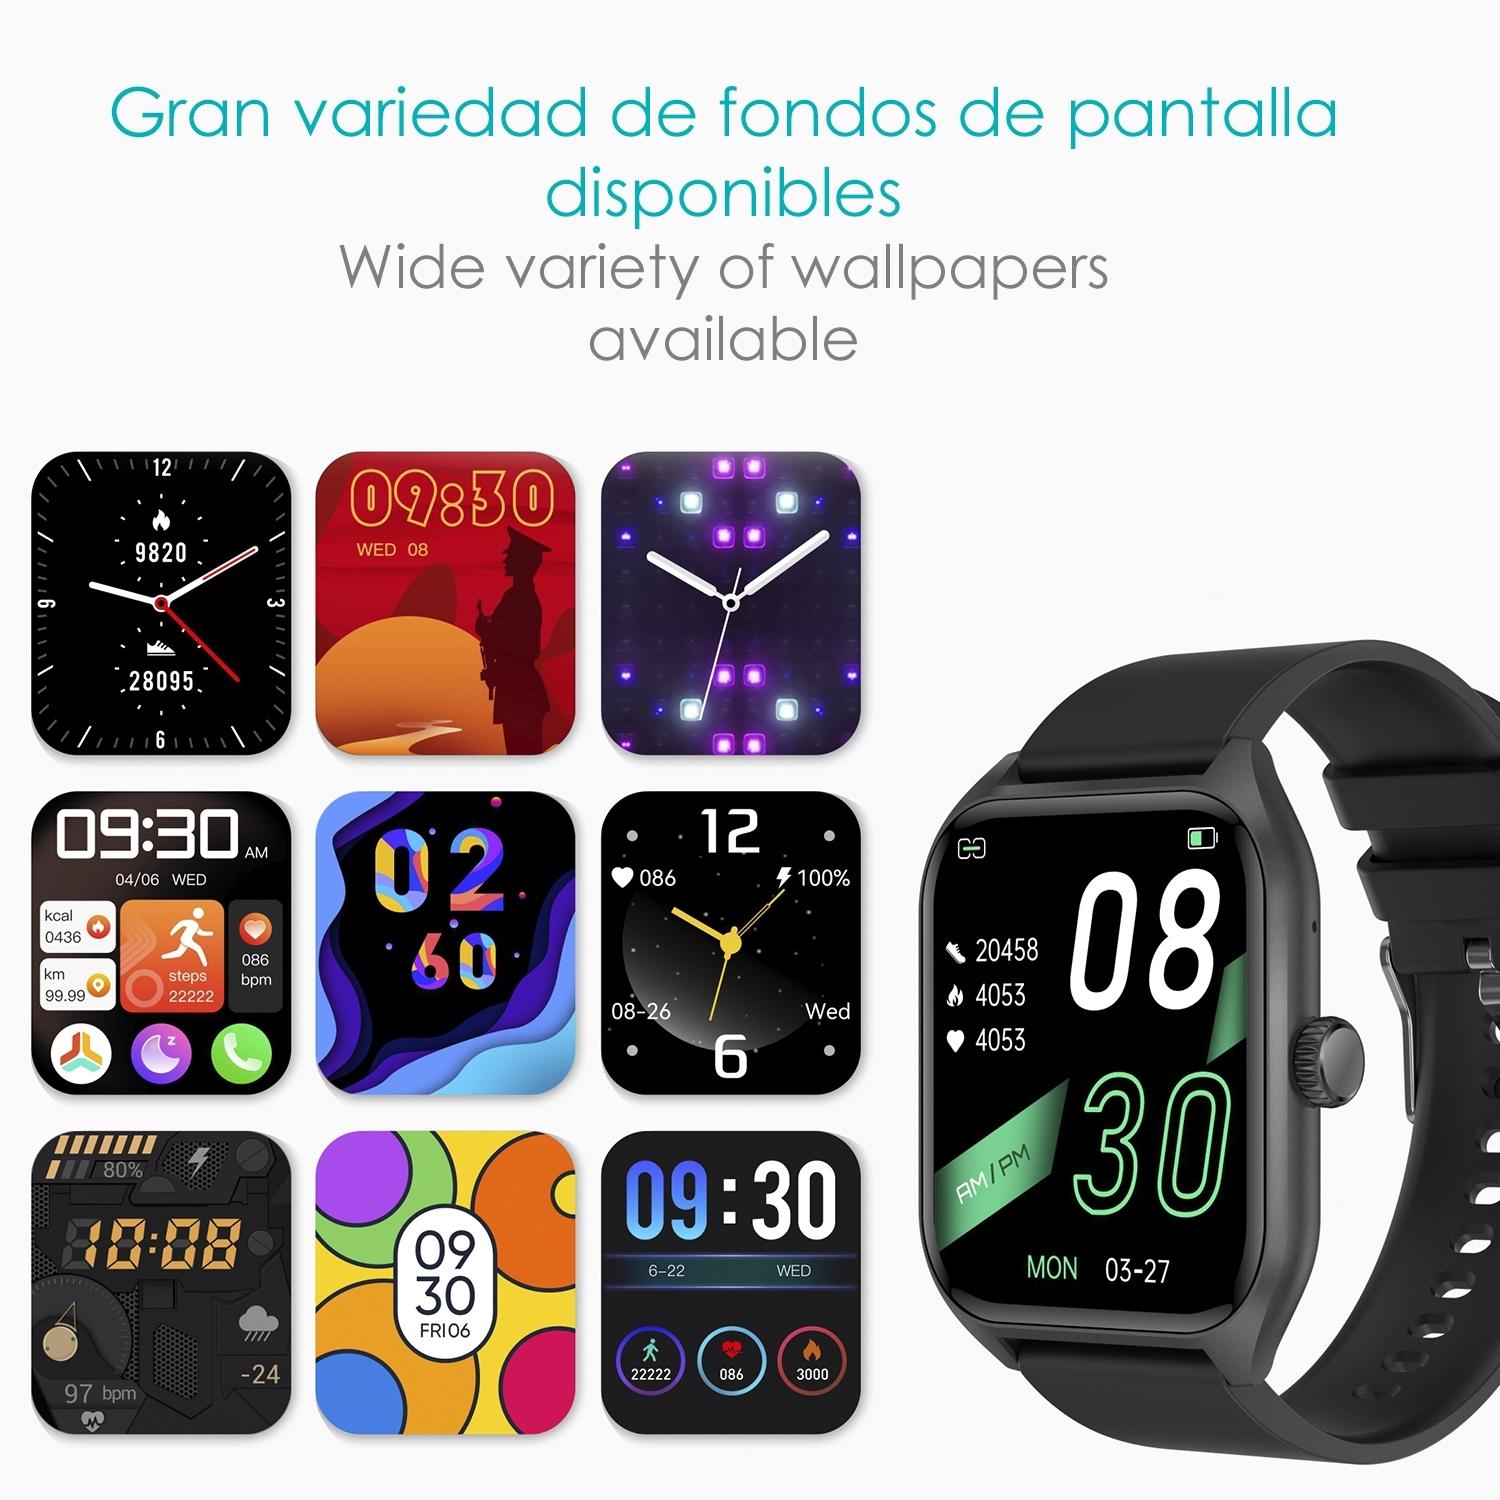 DAM Smartwatch Qx5 con pantalla de 1,96 pulgadas. Llamadas Bluetooth, más de 100 modos deportivos, monitor de glucosa y de tensión.